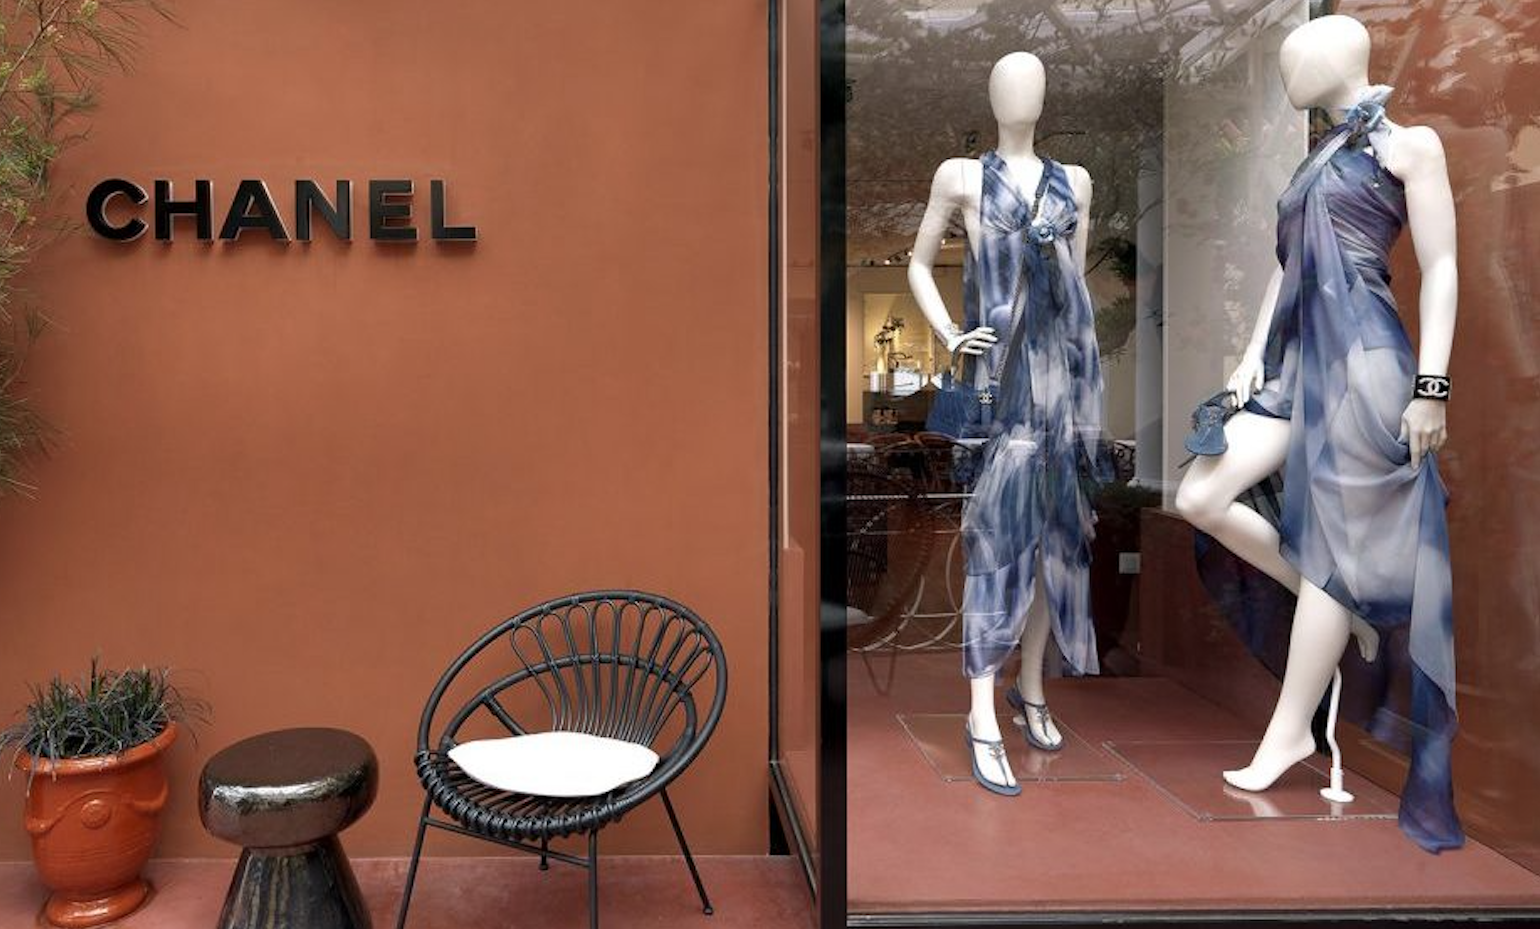 Millonario robo a mano armada en una tienda parisina de Chanel